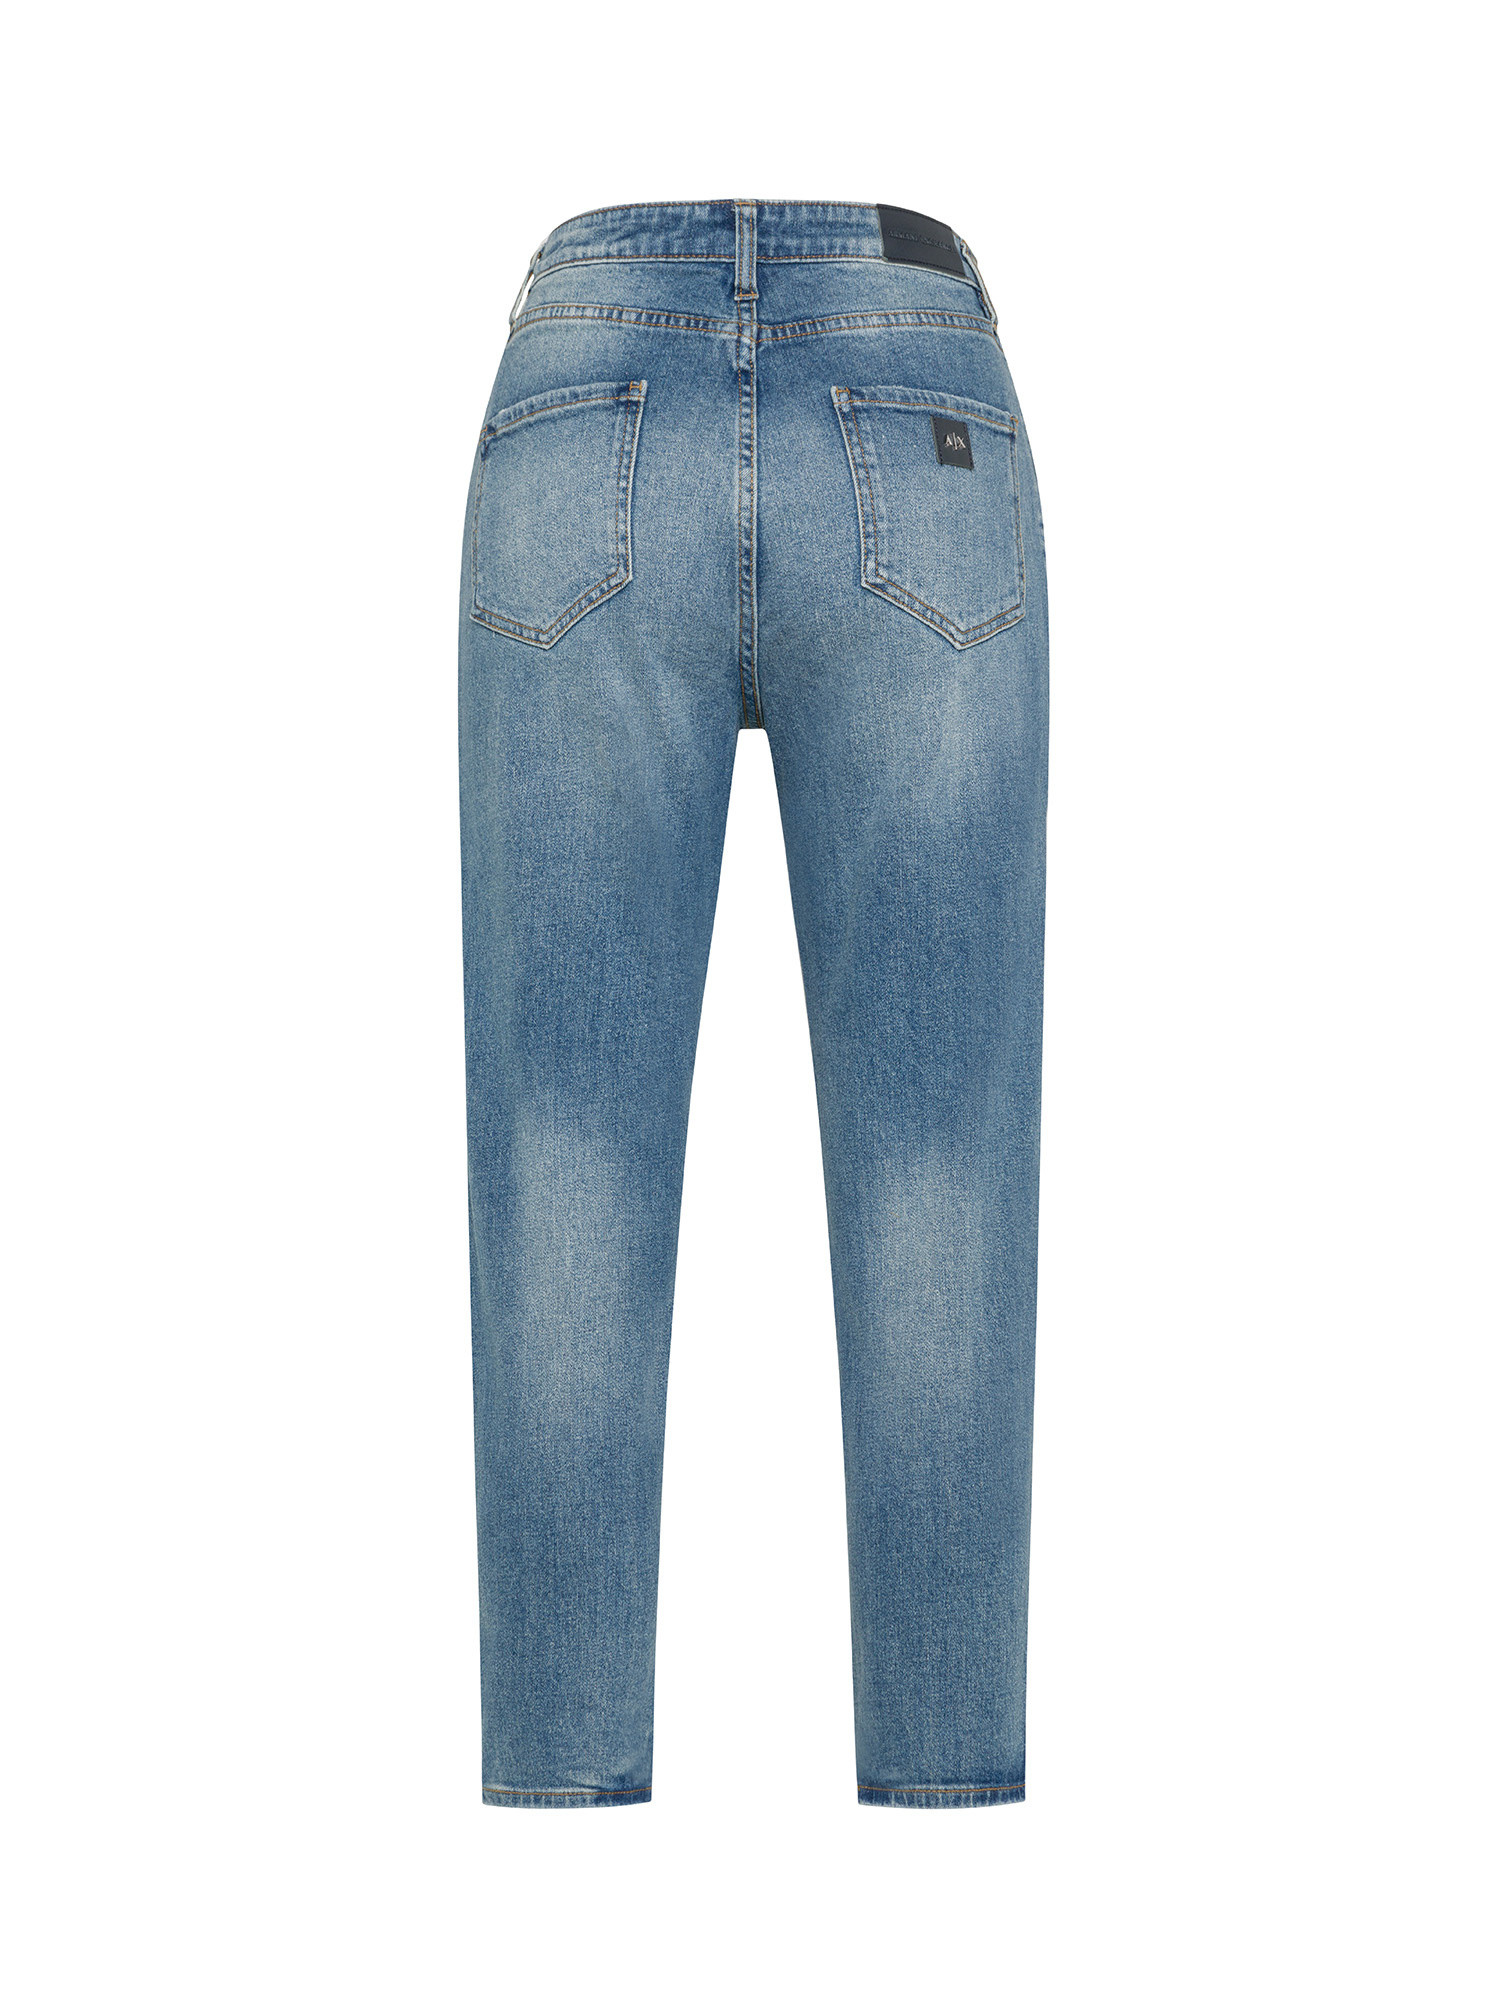 Armani Exchange - Five pocket jeans with logo, Denim, large image number 1